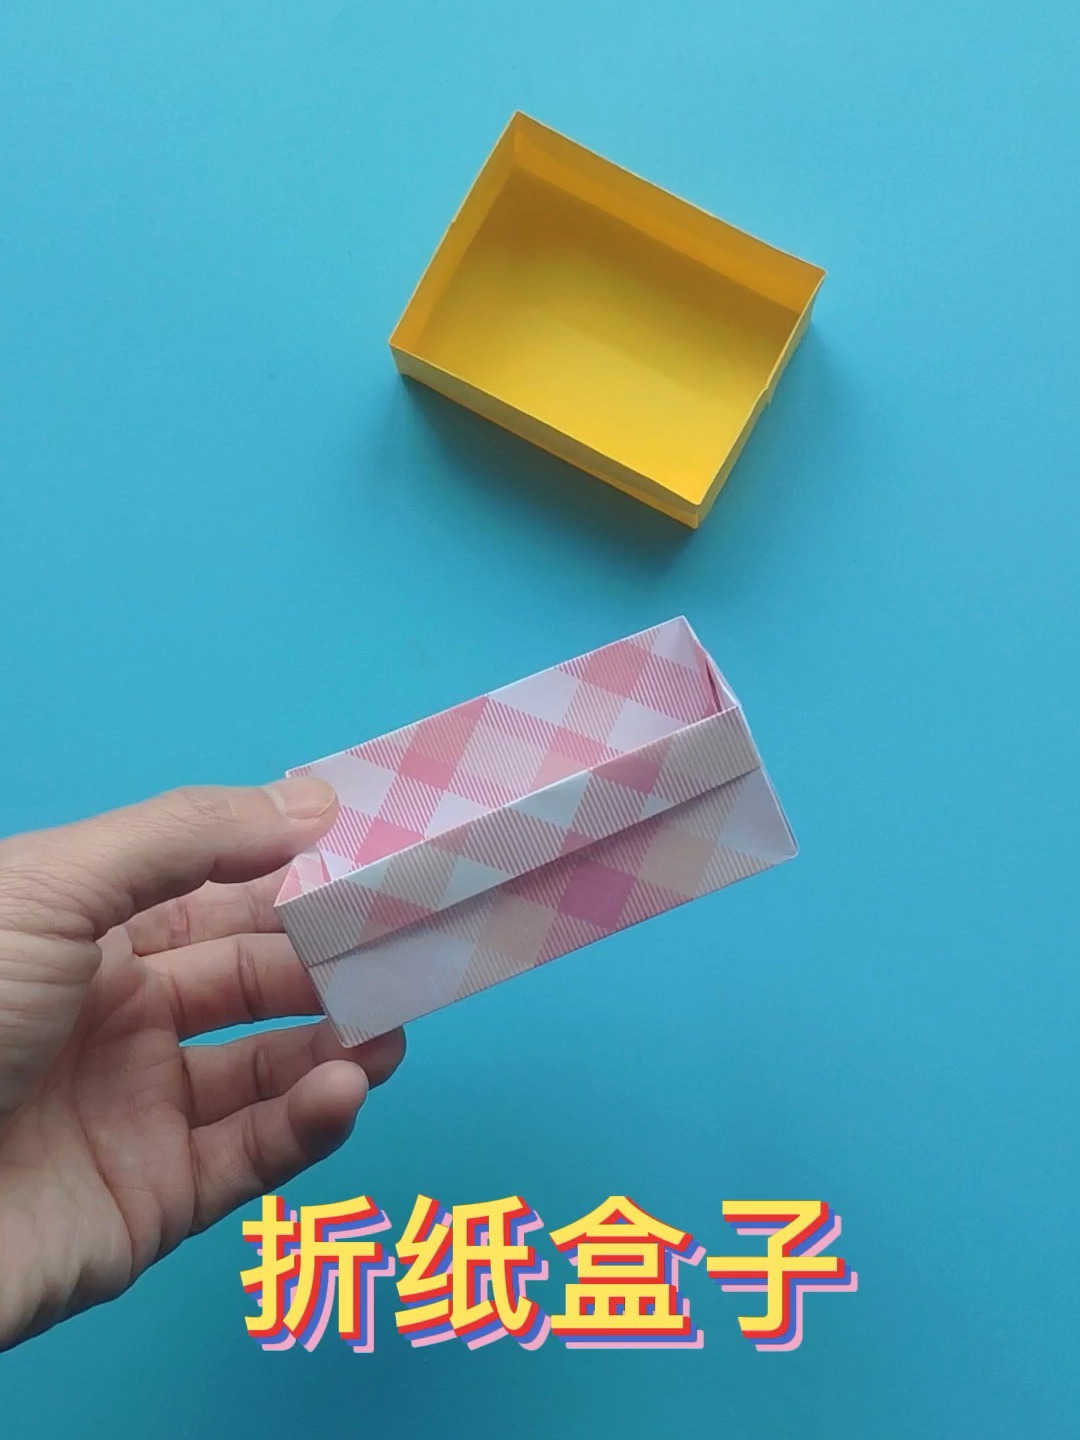 折纸盒子收纳盒教程,简单实用的桌面垃圾盒